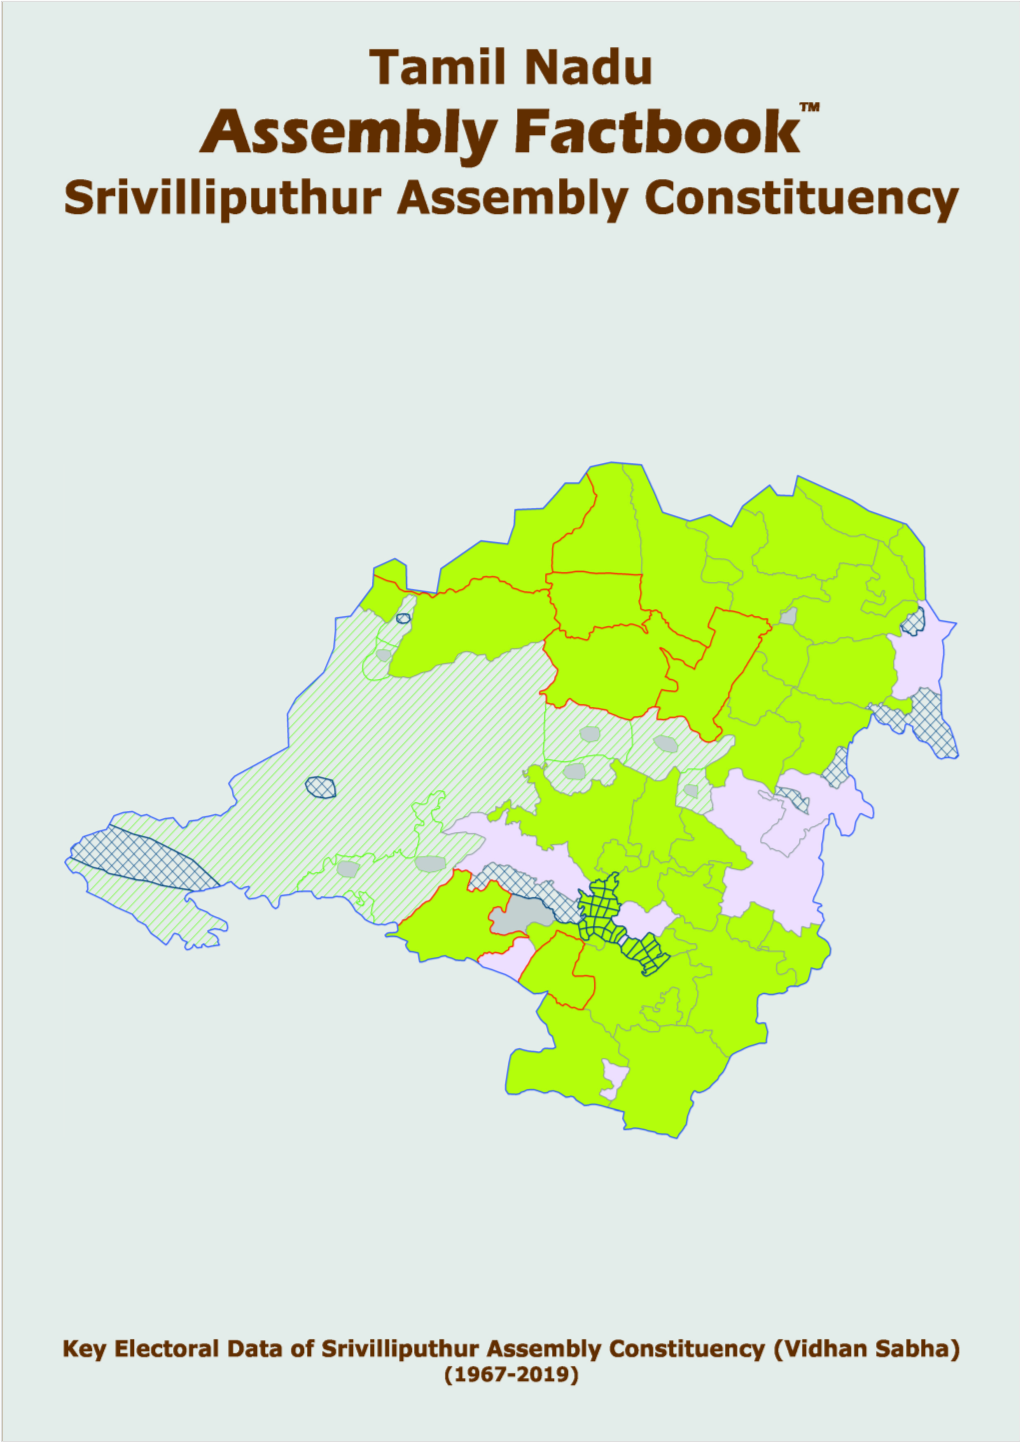 Srivilliputhur Assembly Tamil Nadu Factbook